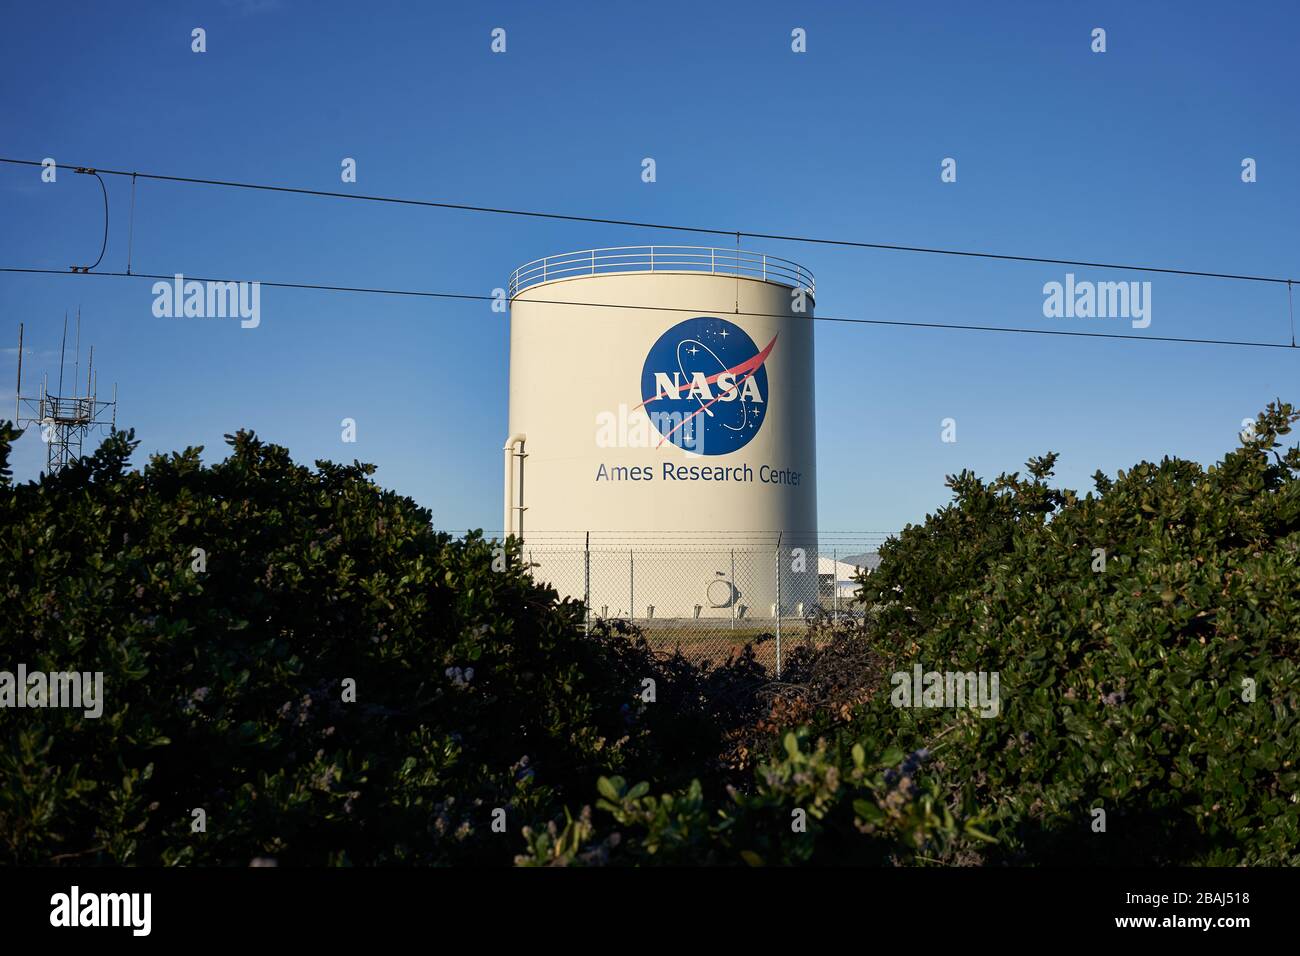 Il Centro di ricerca Ames della NASA, un importante centro di ricerca della NASA presso il Moffett Federal Airfield a Mountain View, California, visto lunedì 2 marzo 2020. Foto Stock